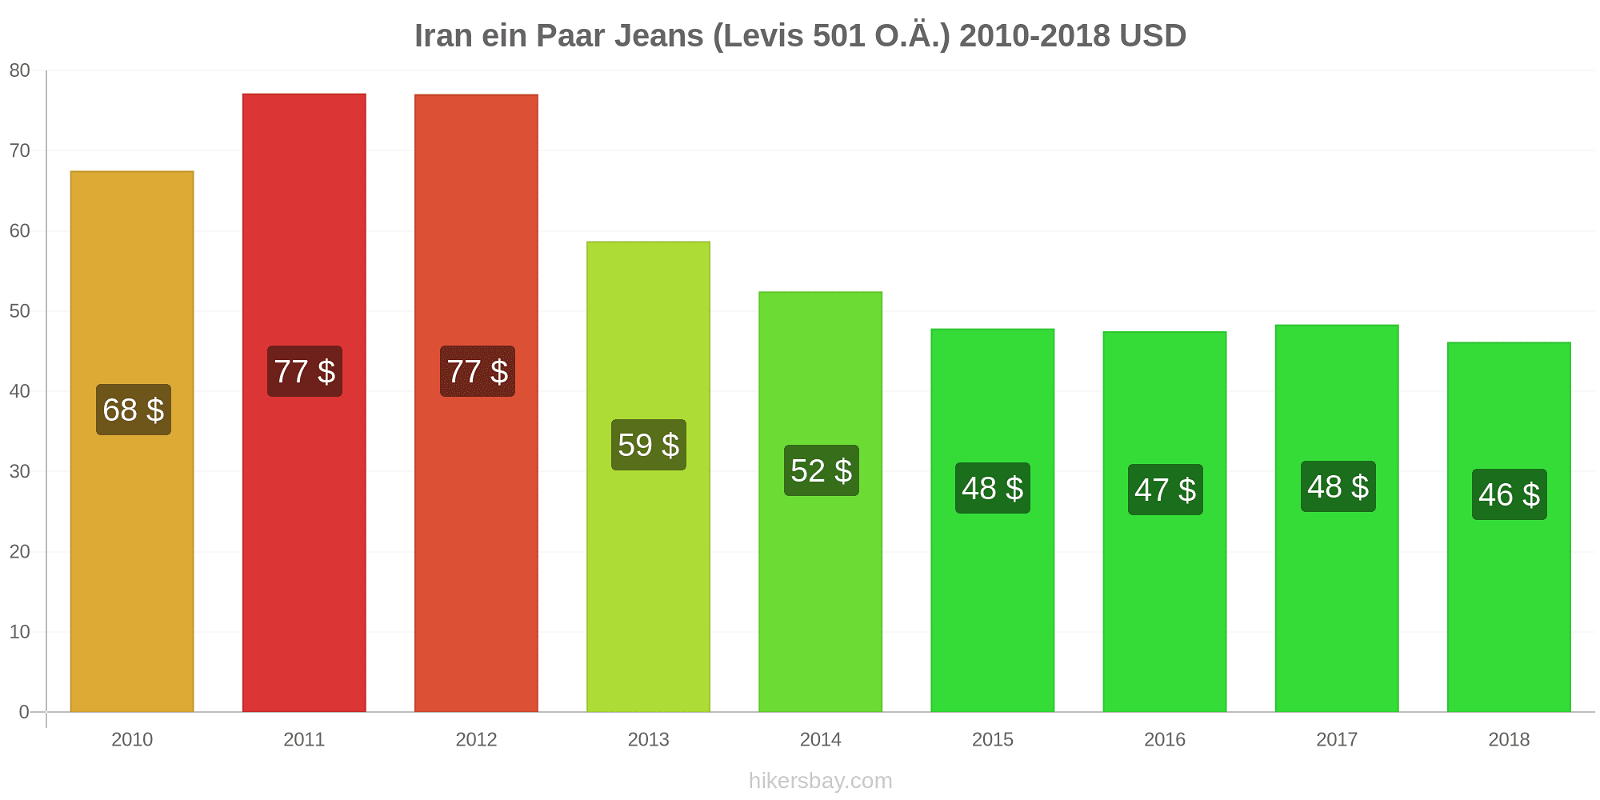 Iran Preisänderungen 1 Paar Jeans (Levis 501 oder ähnliche) hikersbay.com